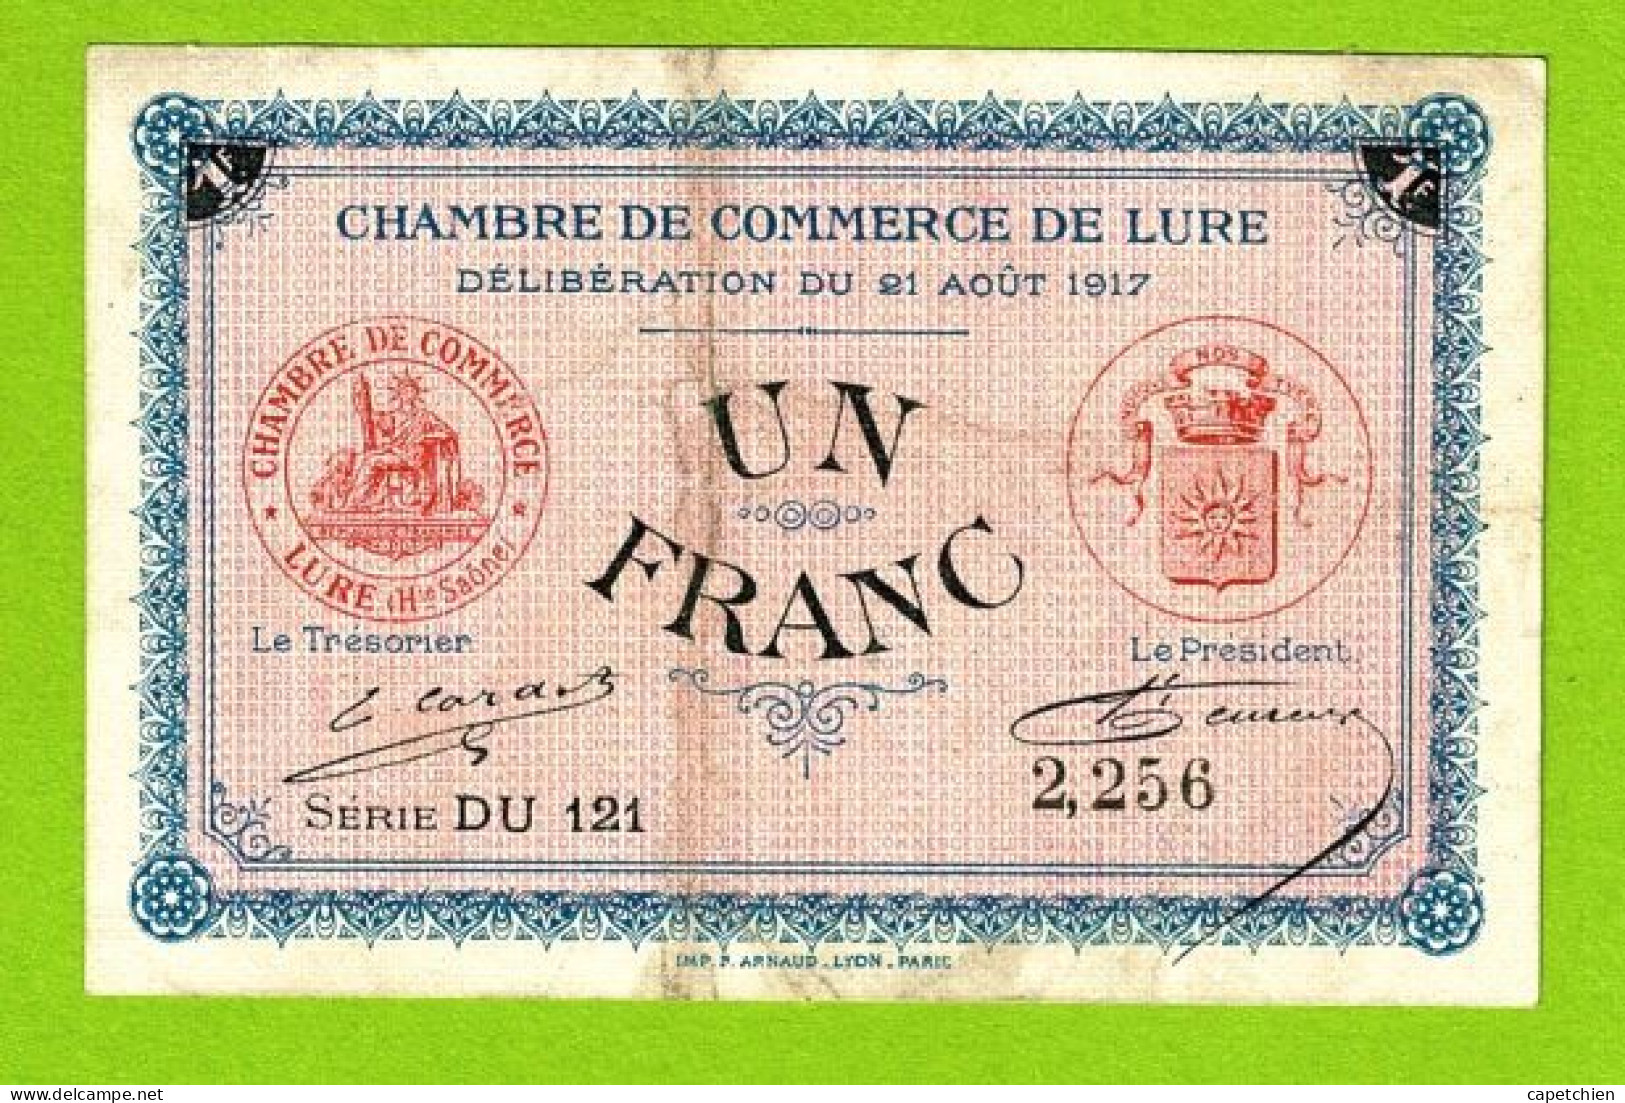 FRANCE / LURE / 1 FRANC / 21 AOUT 1917 / N° 2256 / SERIE DU121 / 6eme EMISSION - Chambre De Commerce